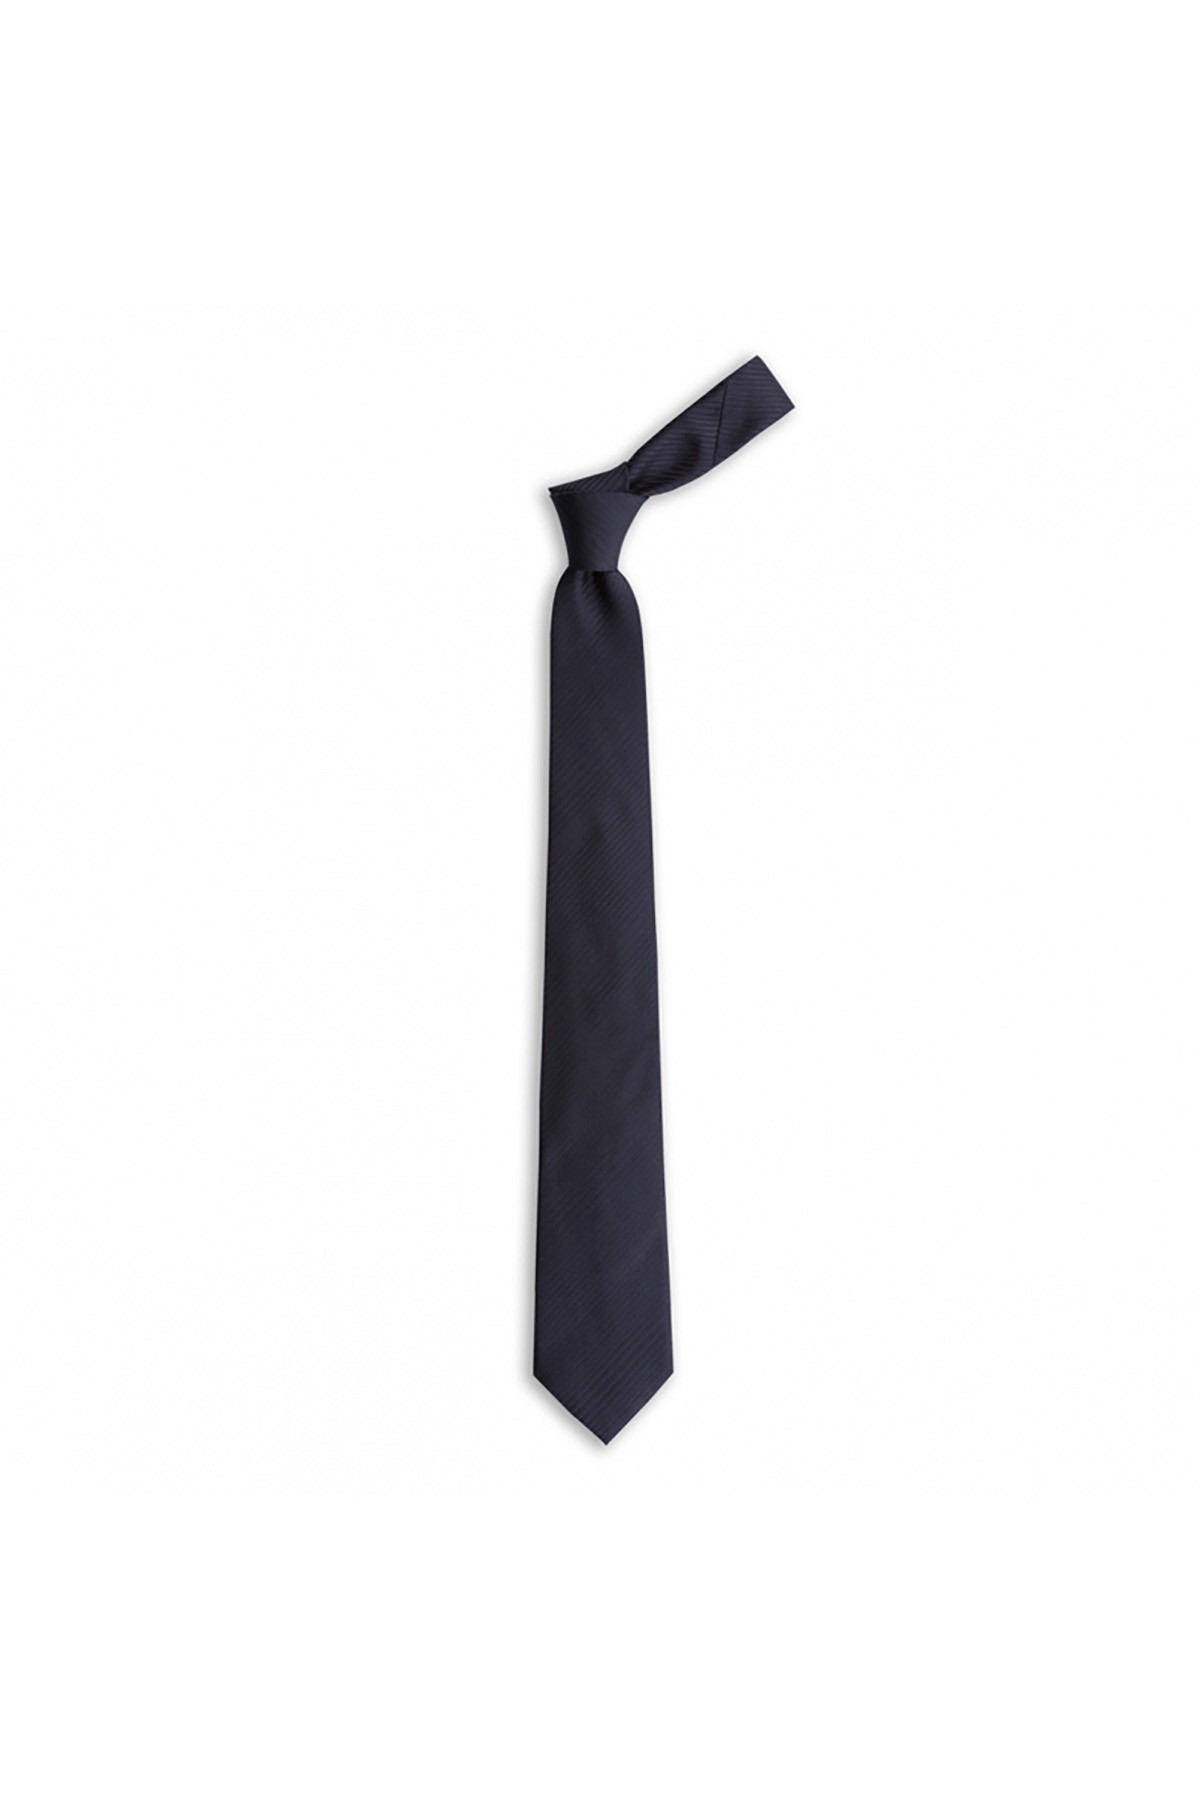 İnce çizgili 7 cm genişliğinde ipek kravat